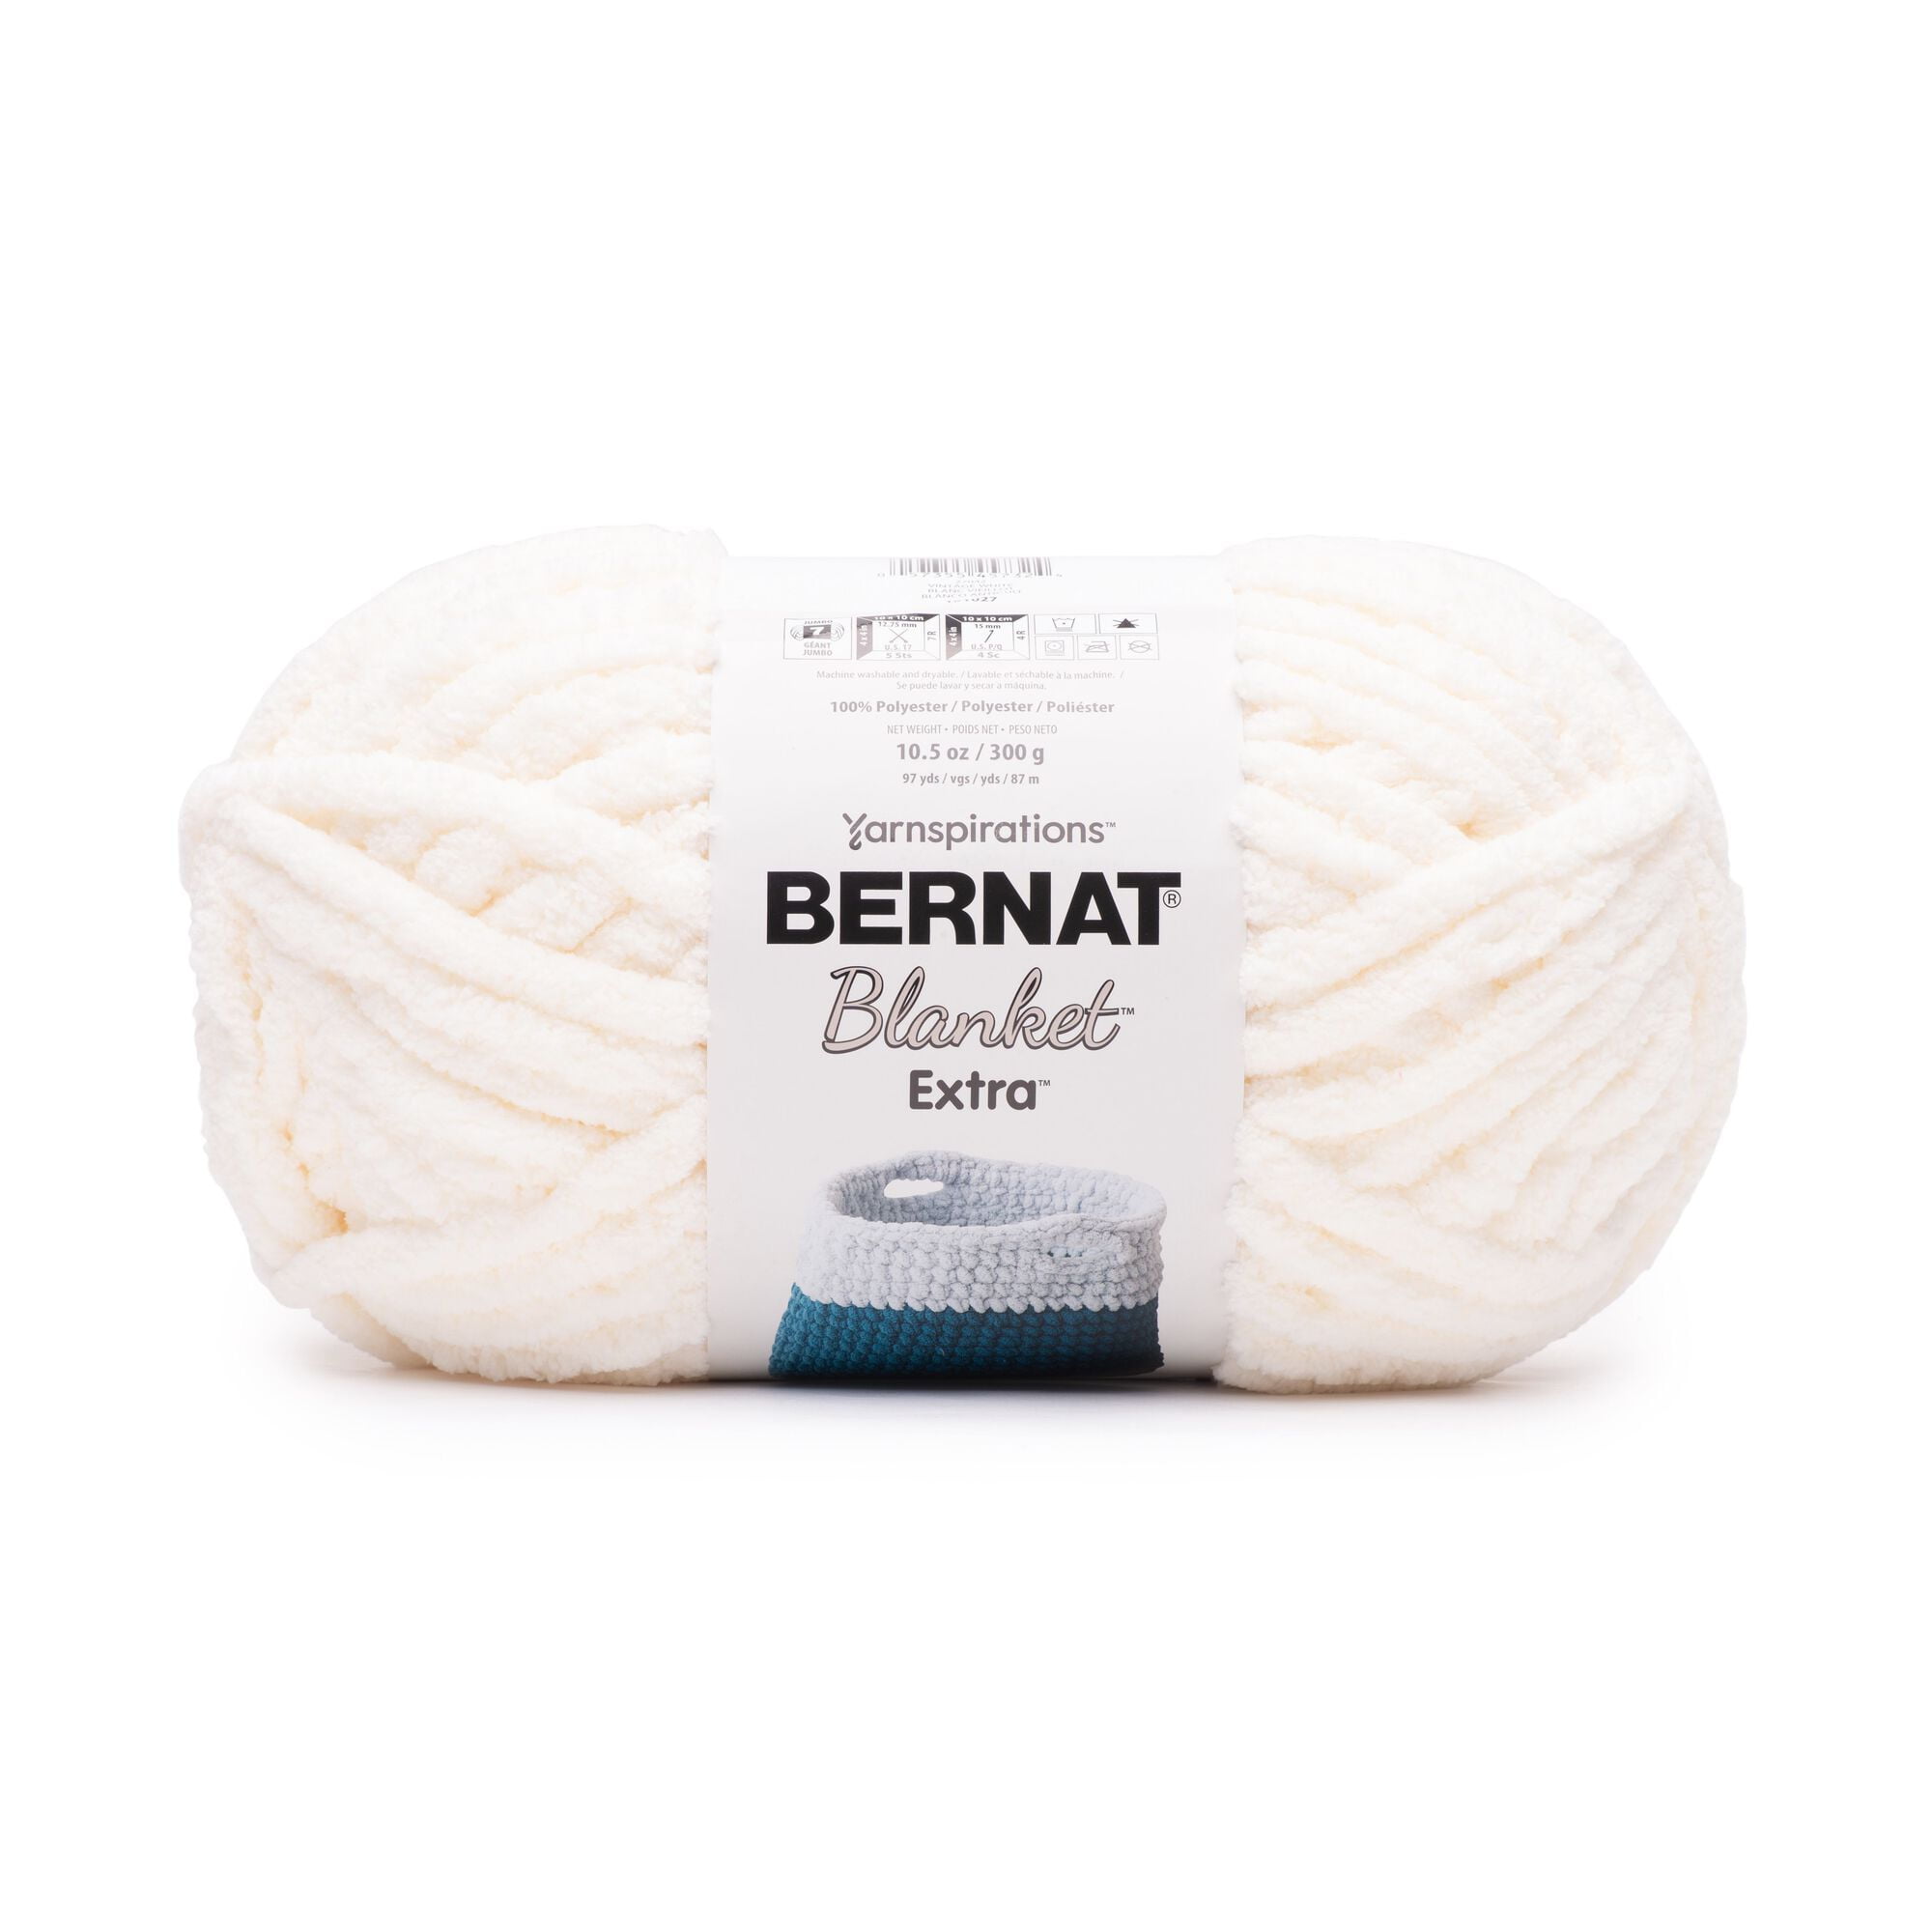 Bernat Blanket Extra Yarn - Vintage White